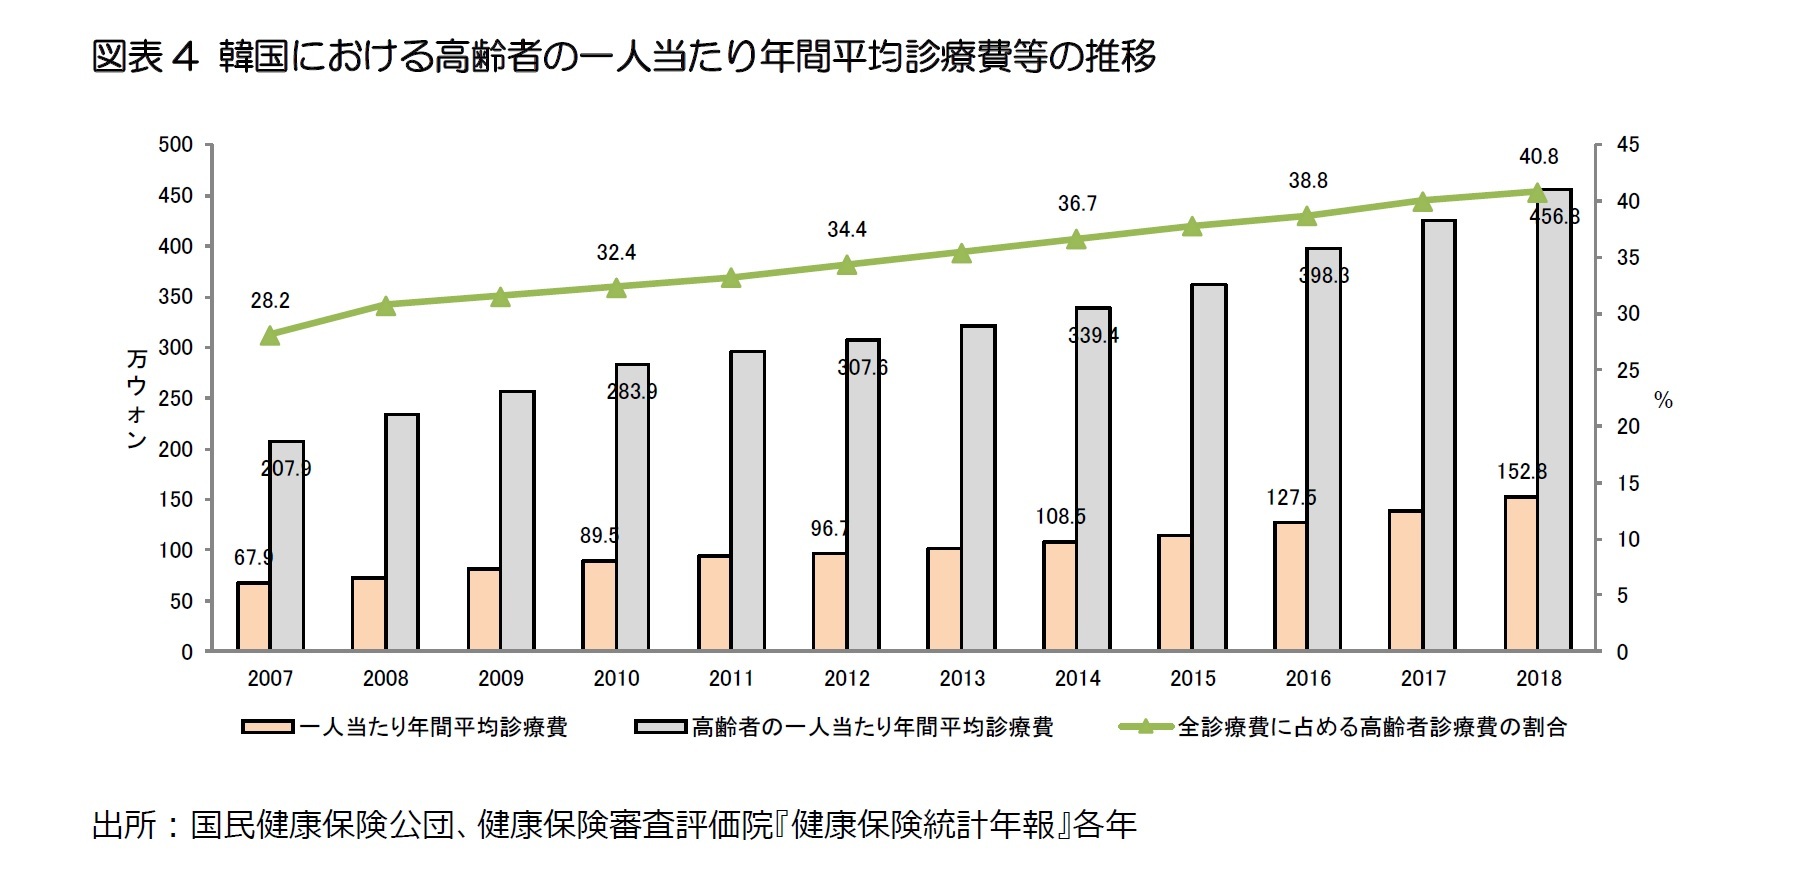 図表4 韓国における高齢者の一人当たり年間平均診療費等の推移